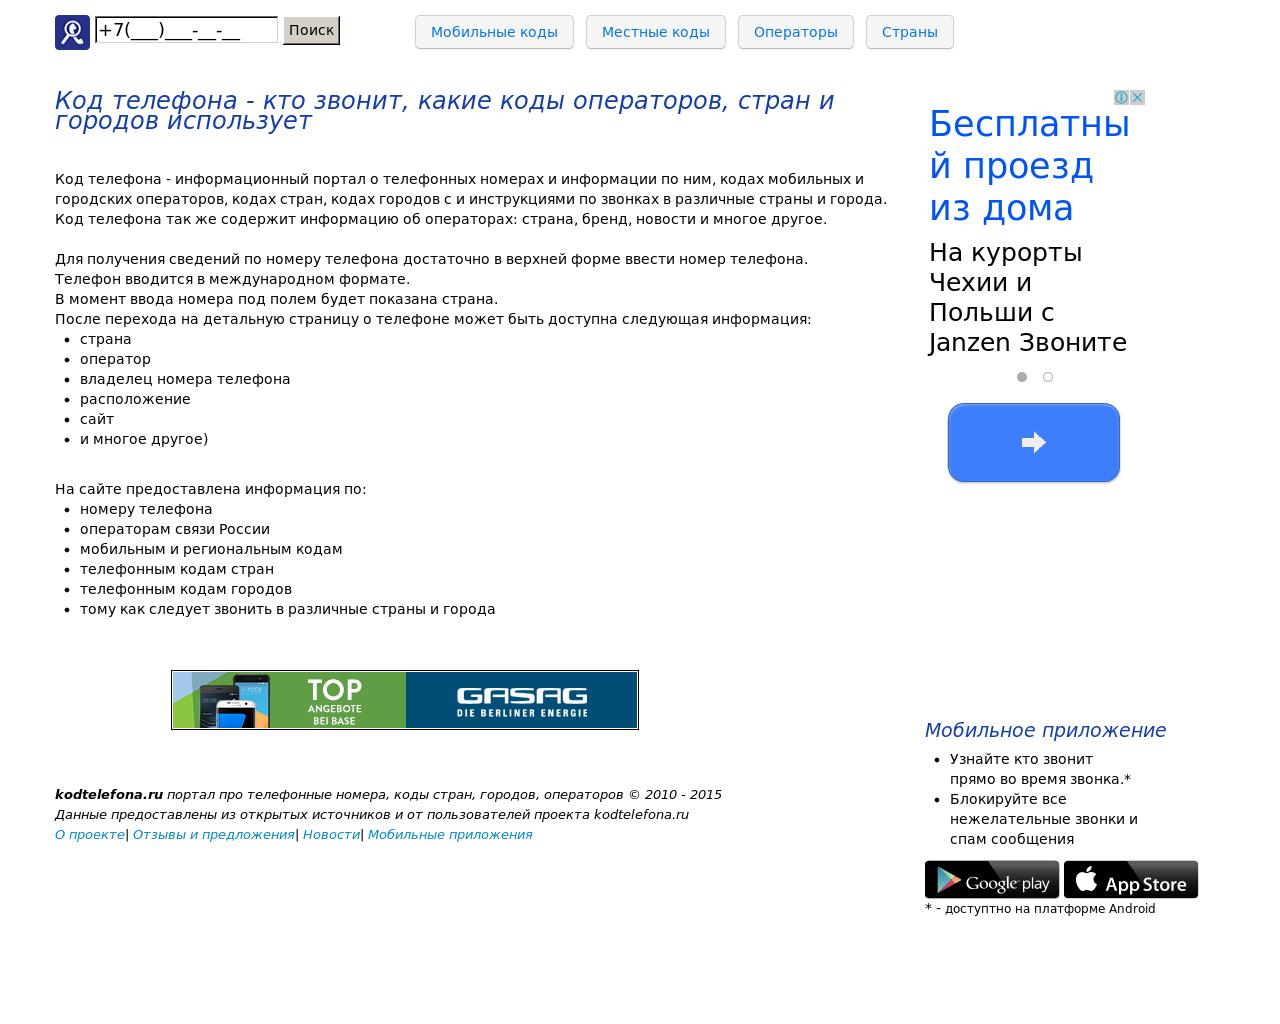 Изображение сайта kodtelefona.ru в разрешении 1280x1024